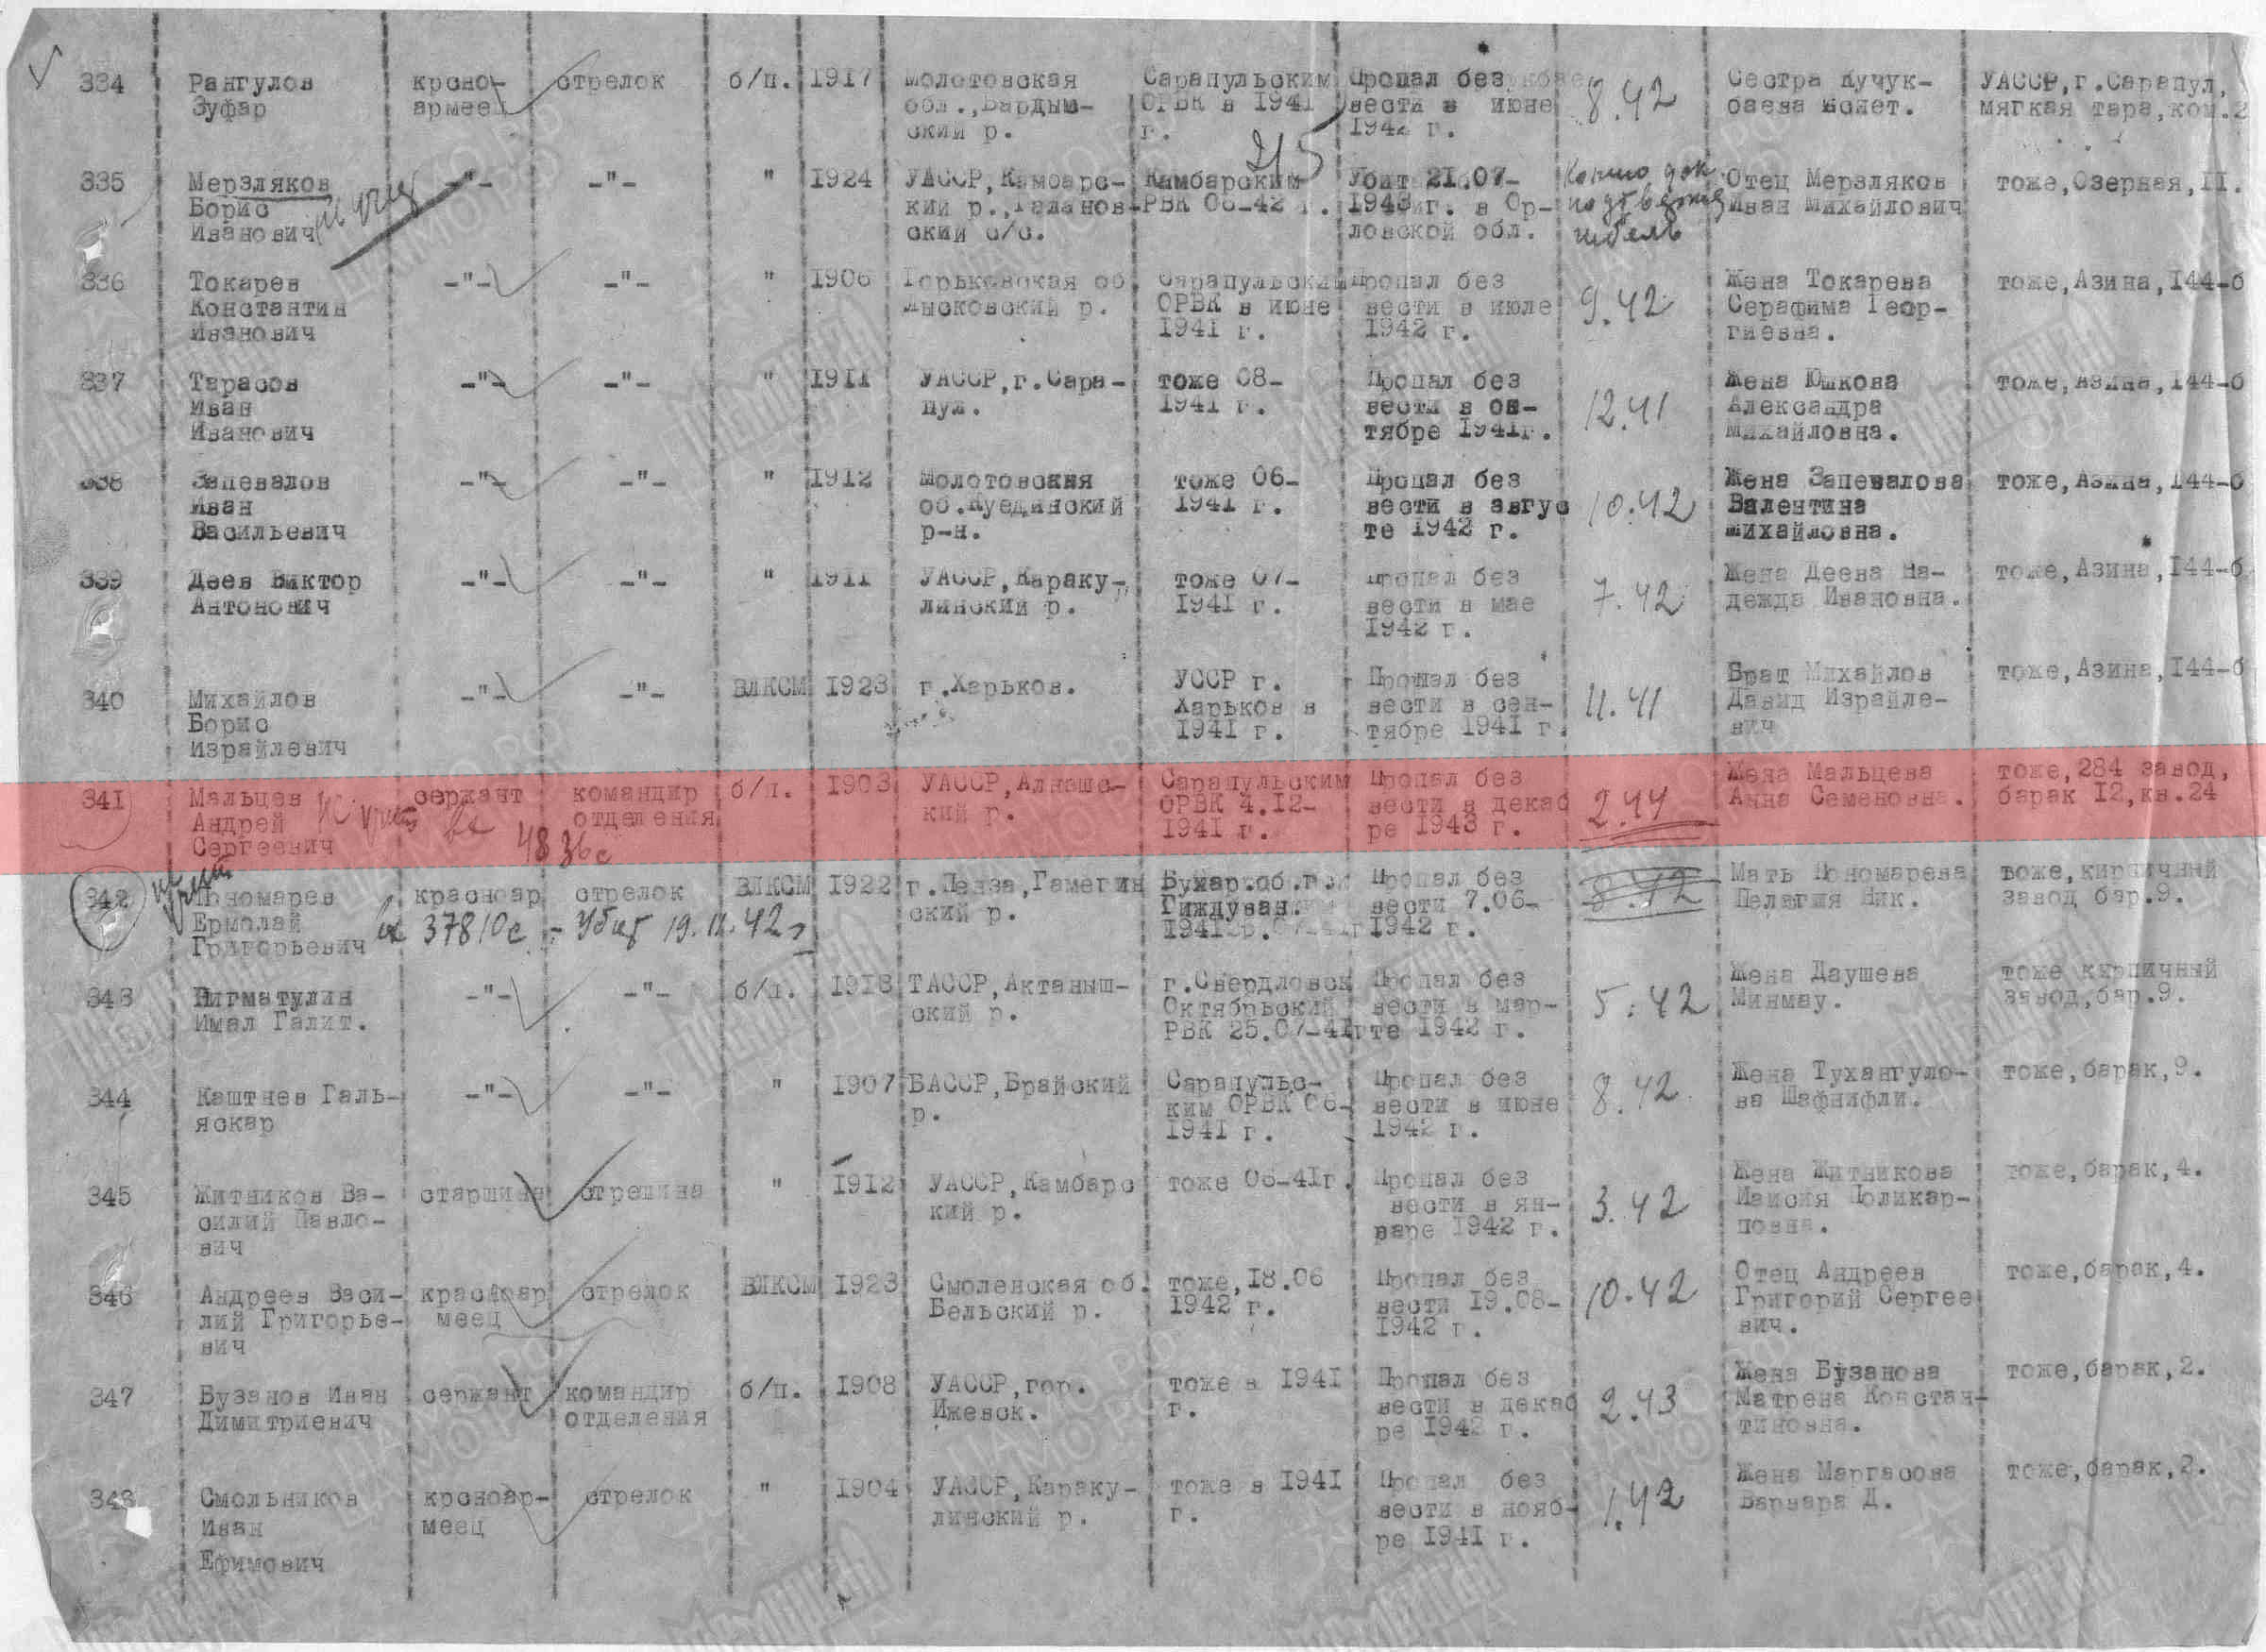 Лист донесения послевоенного периода, уточняющего потери, 28.10.1946